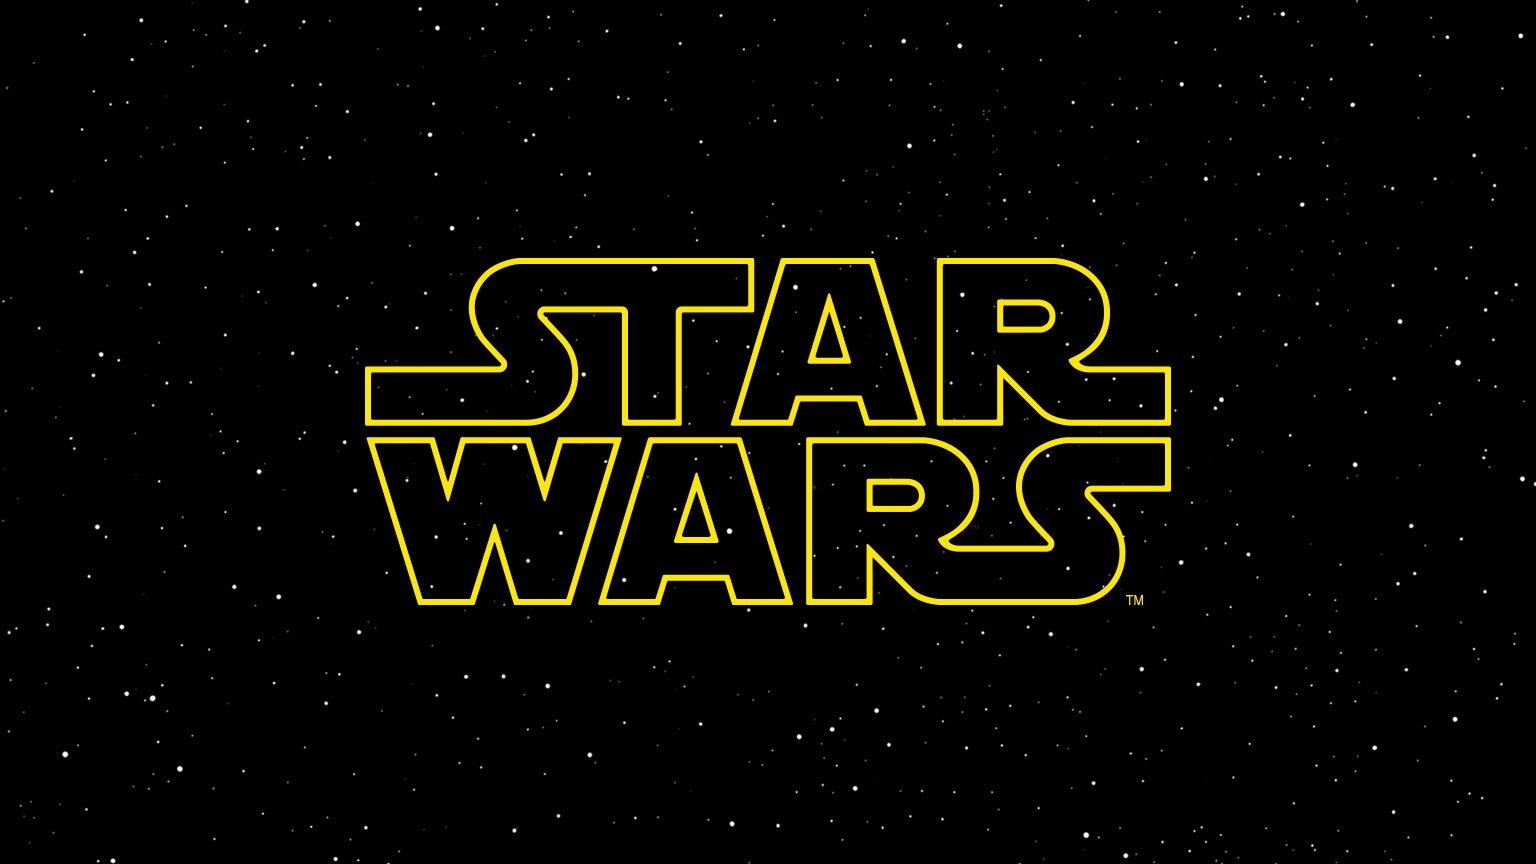 Logo da franquia Star Wars